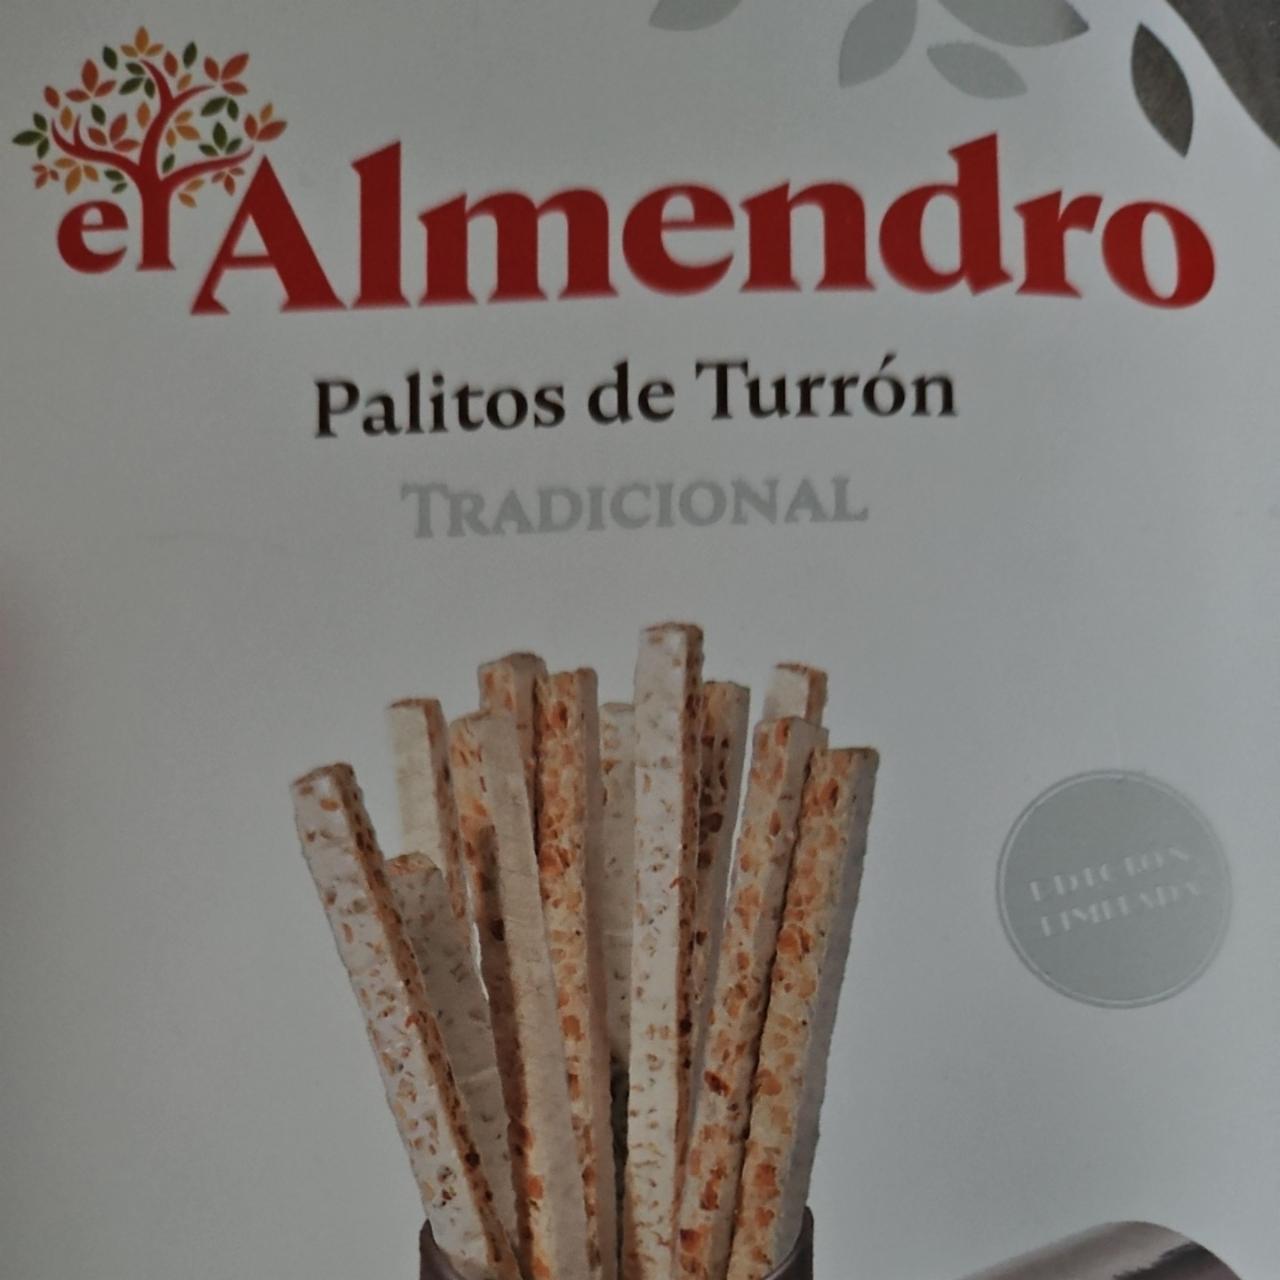 Fotografie - Palitos de Turrón Almendro